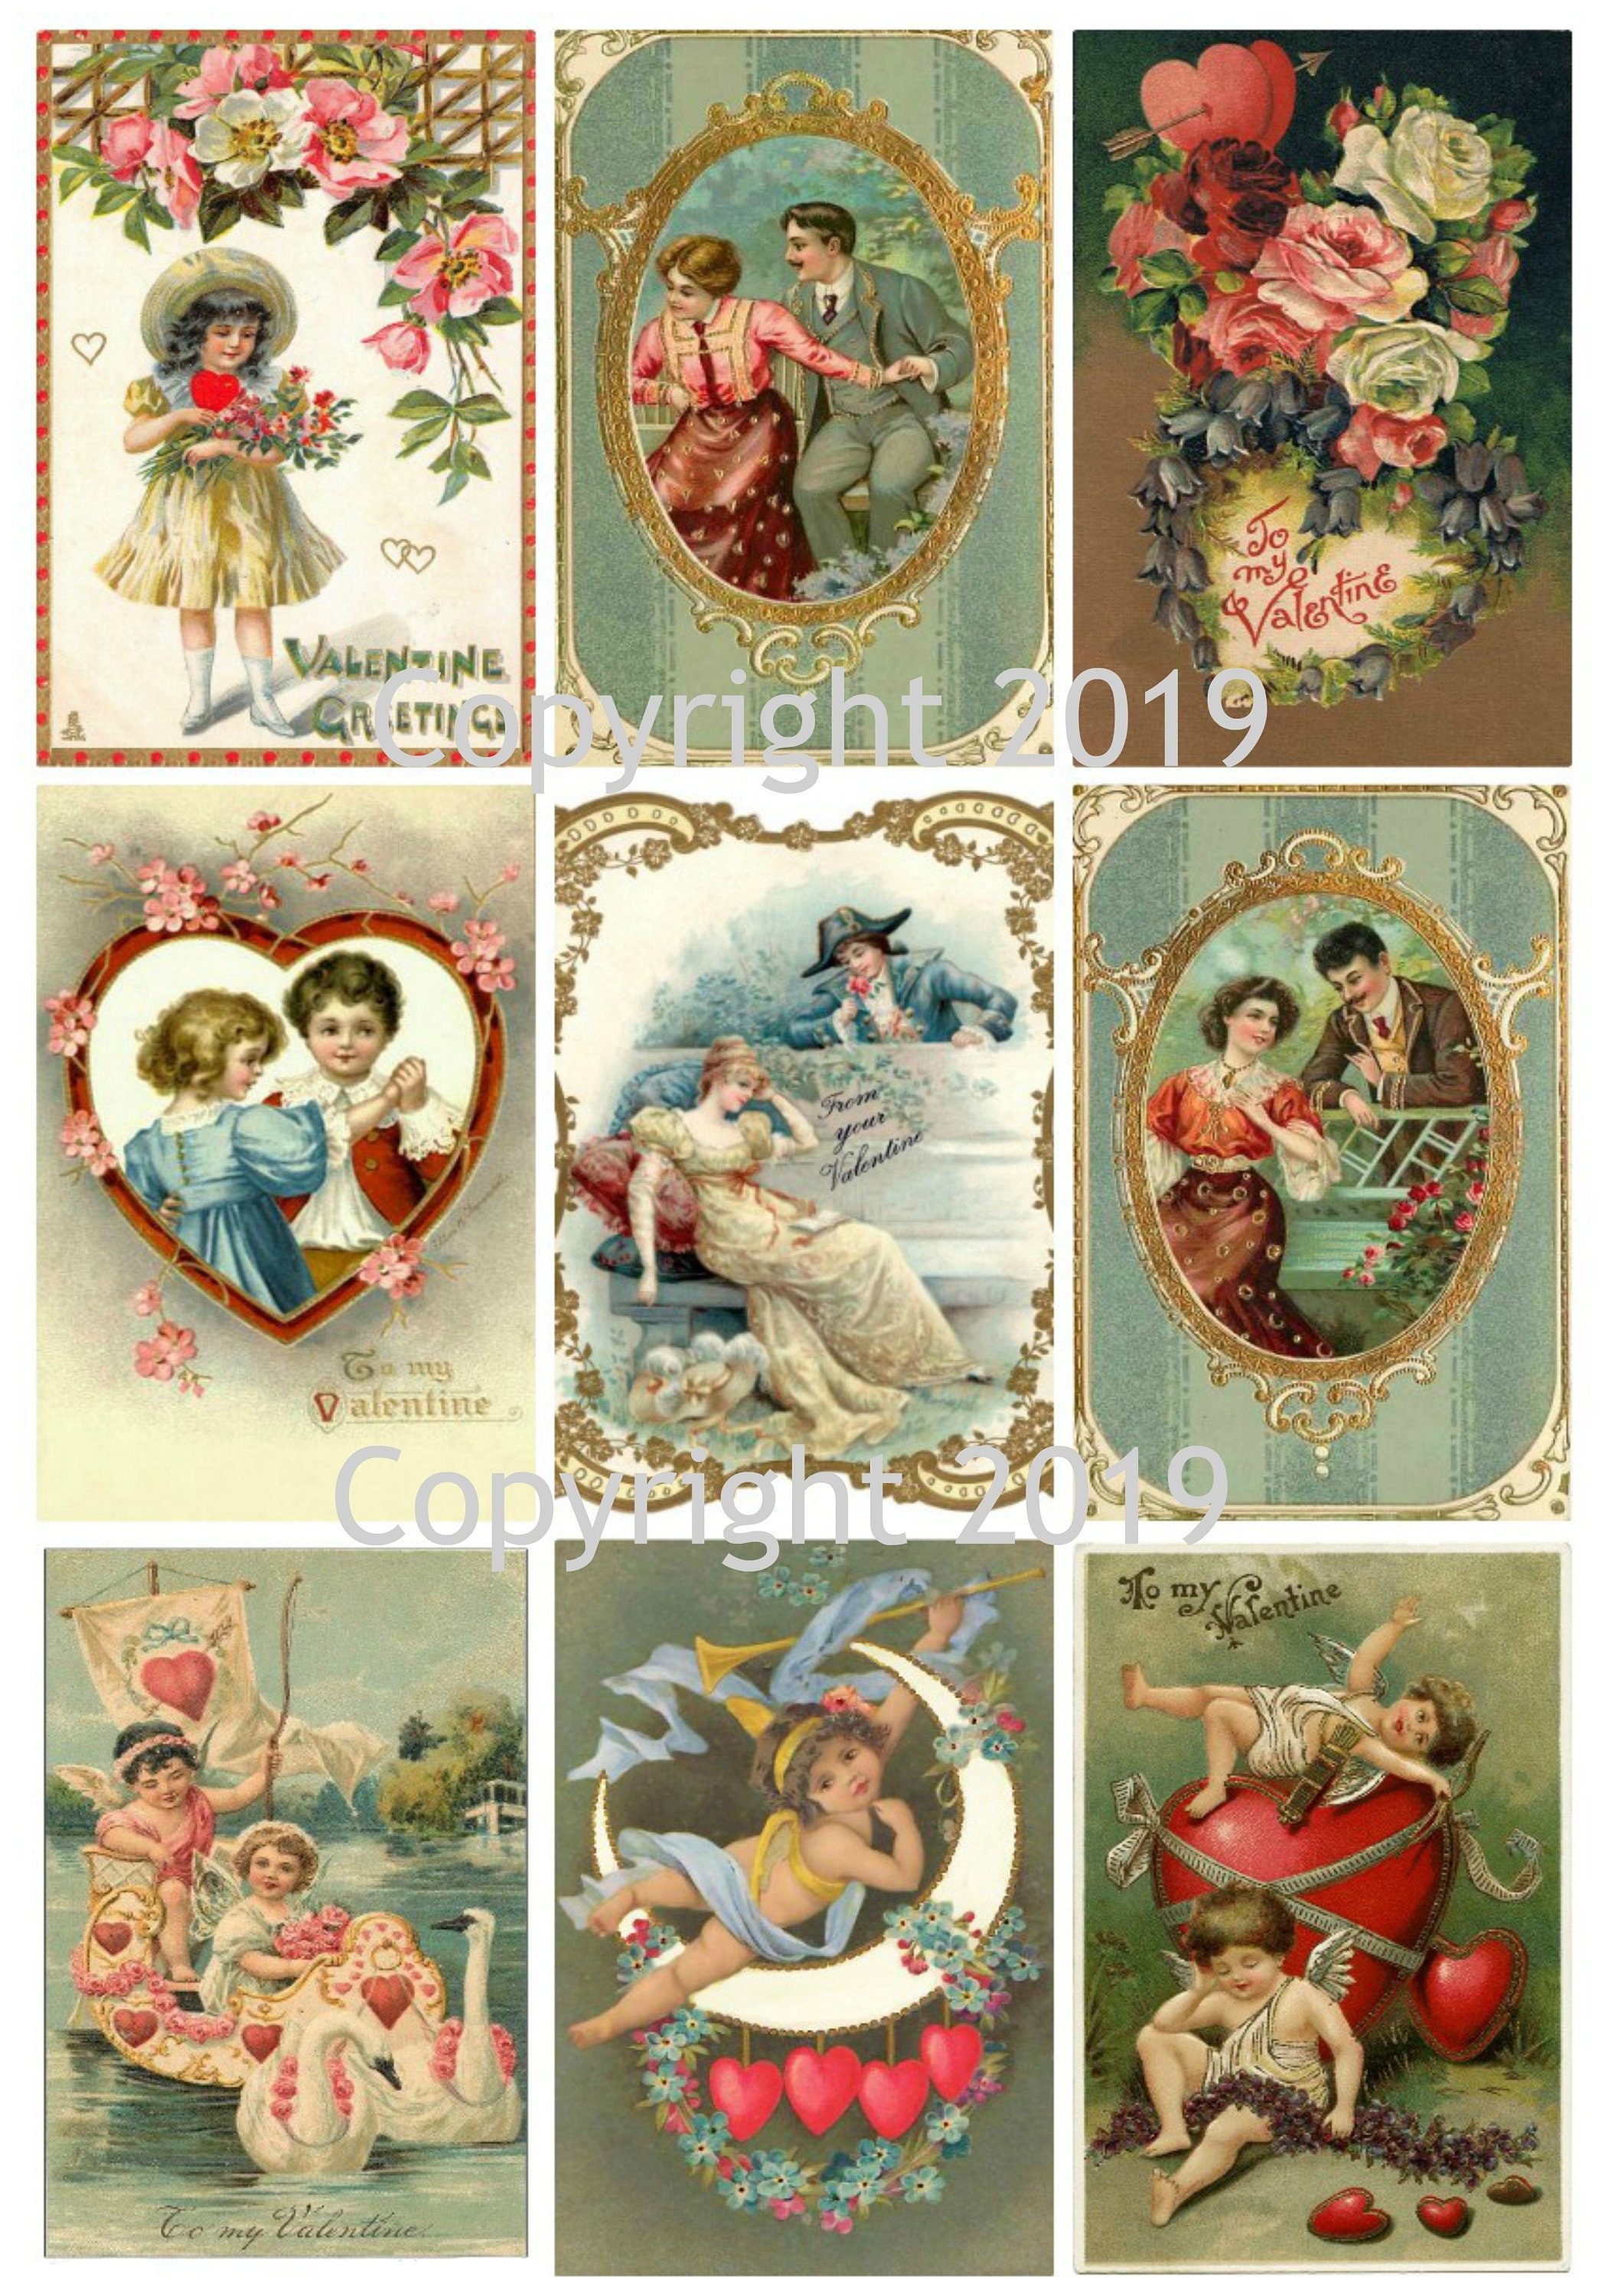 Vintage Valentine Card Images Digital Collage Sheet #113 for Altered Art,  Scrapbooking, Design, Cards, Instant Digital Download JPG and PDF